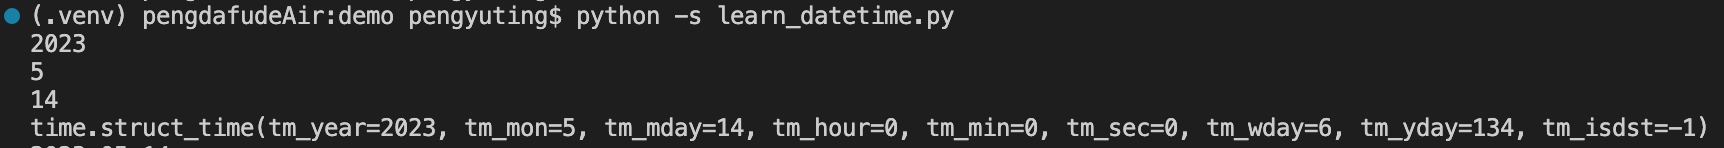 python常用的时间模块之datetime模块